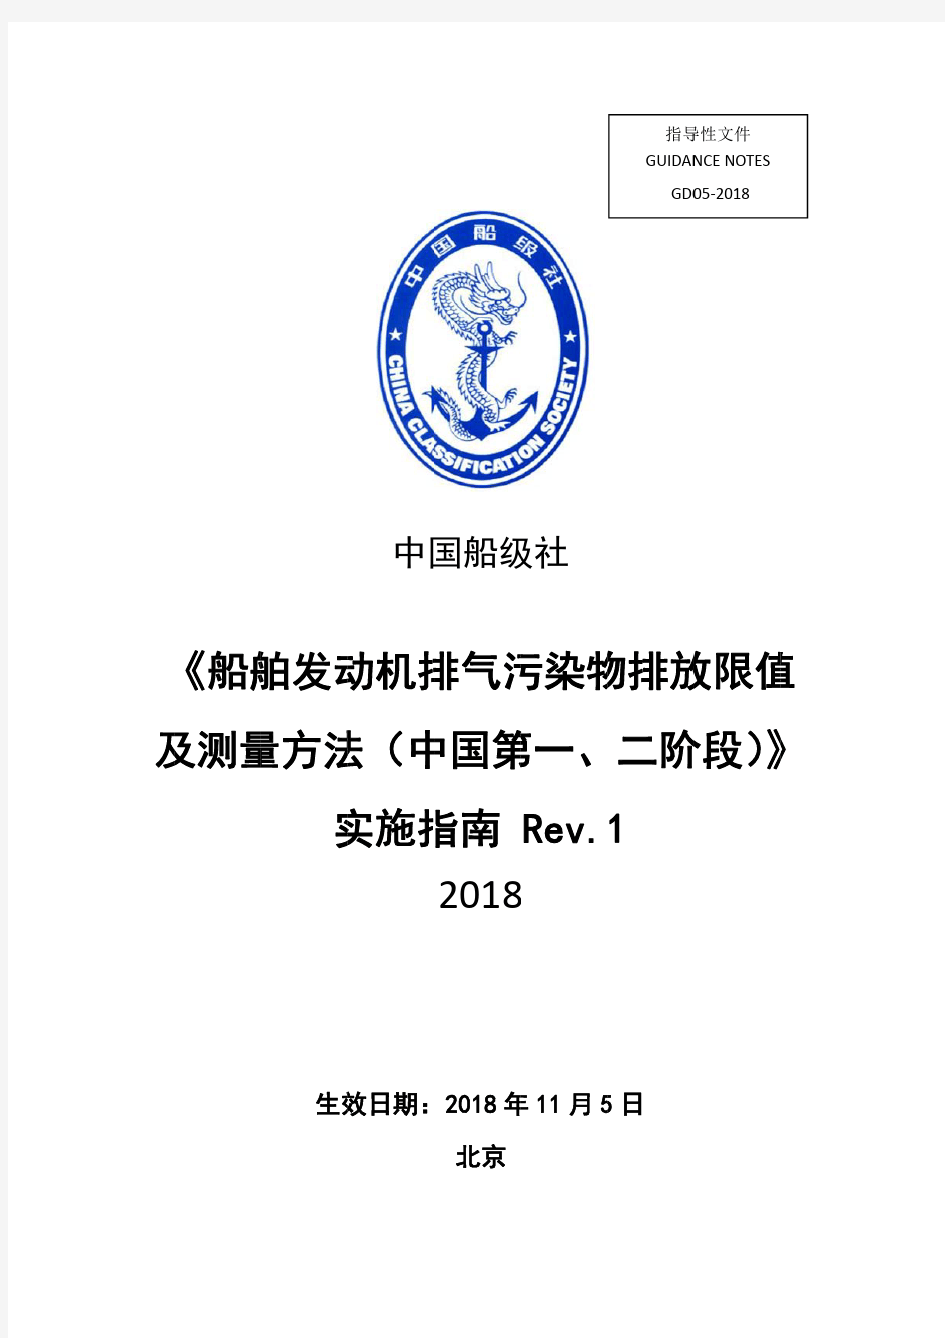 《船舶发动机排气污染物排放限值及测量方法(中国第一、二阶段)》实施指南+Rev.1 (1)